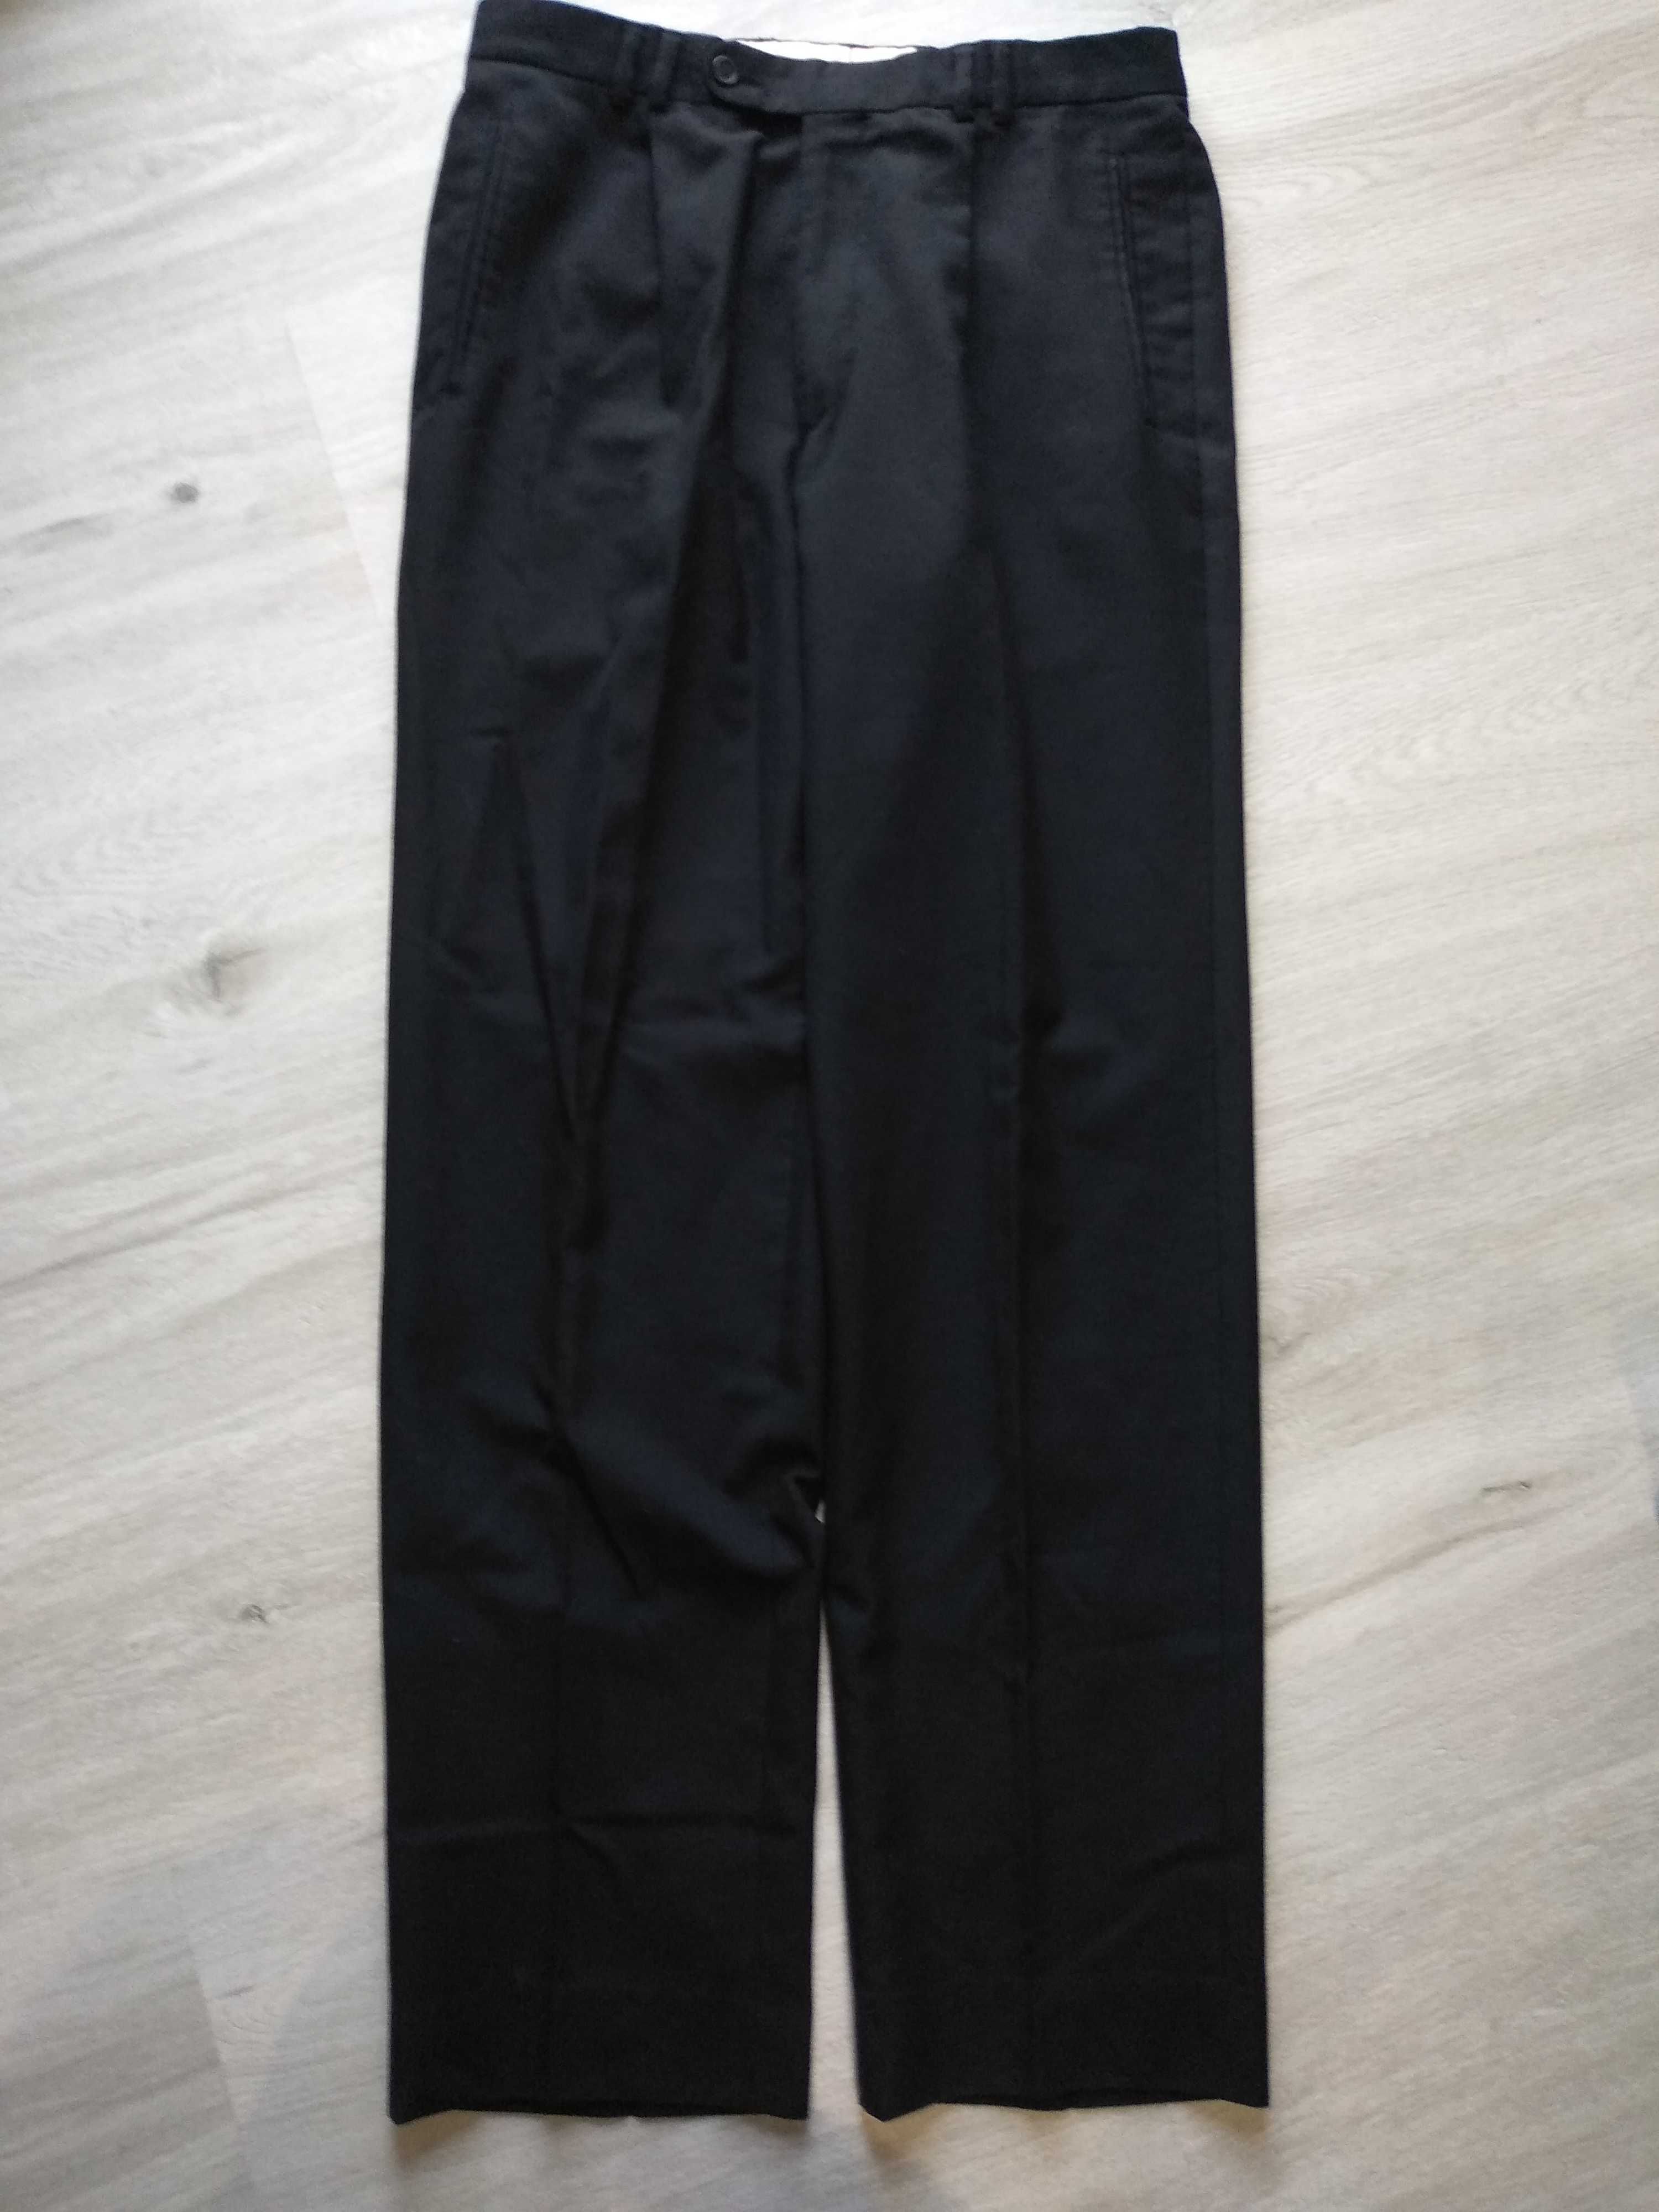 Spodnie garniturowe / do garnituru - czarne